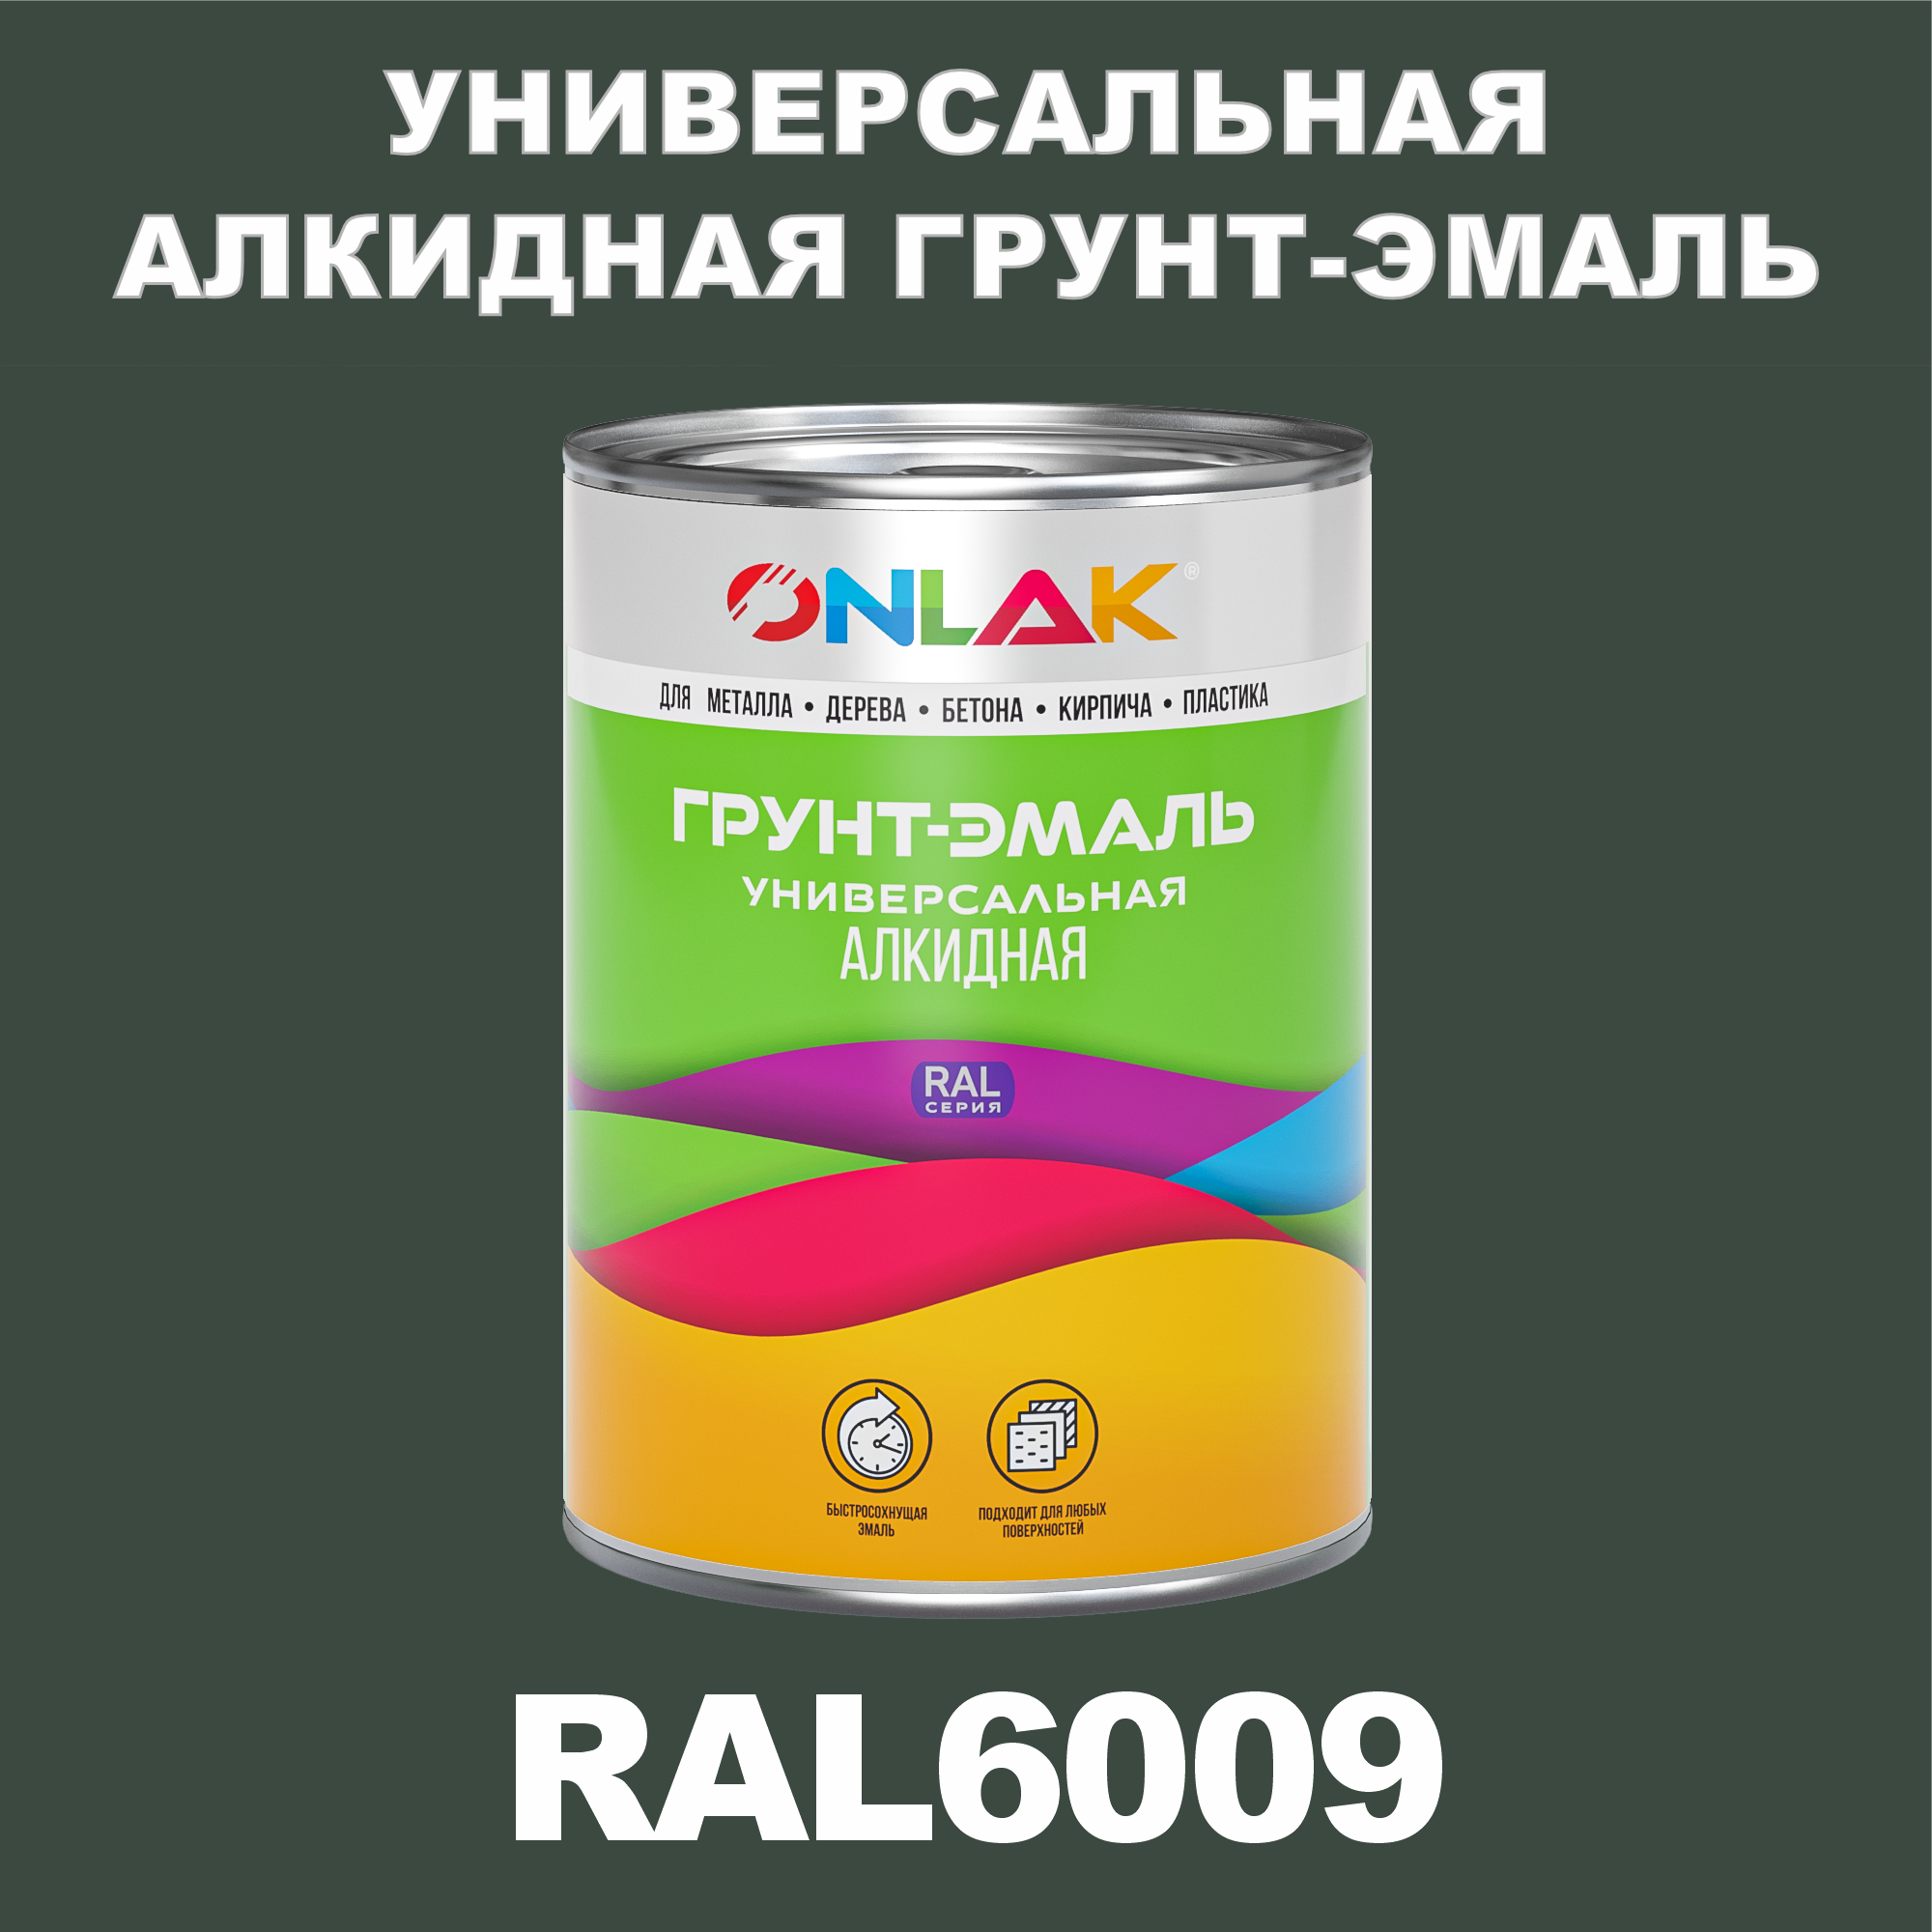 Грунт-эмаль ONLAK 1К RAL6009 антикоррозионная алкидная по металлу по ржавчине 1 кг грунт эмаль аэрозольная престиж 3в1 алкидная коричневая ral 8017 425 мл 0 425 кг